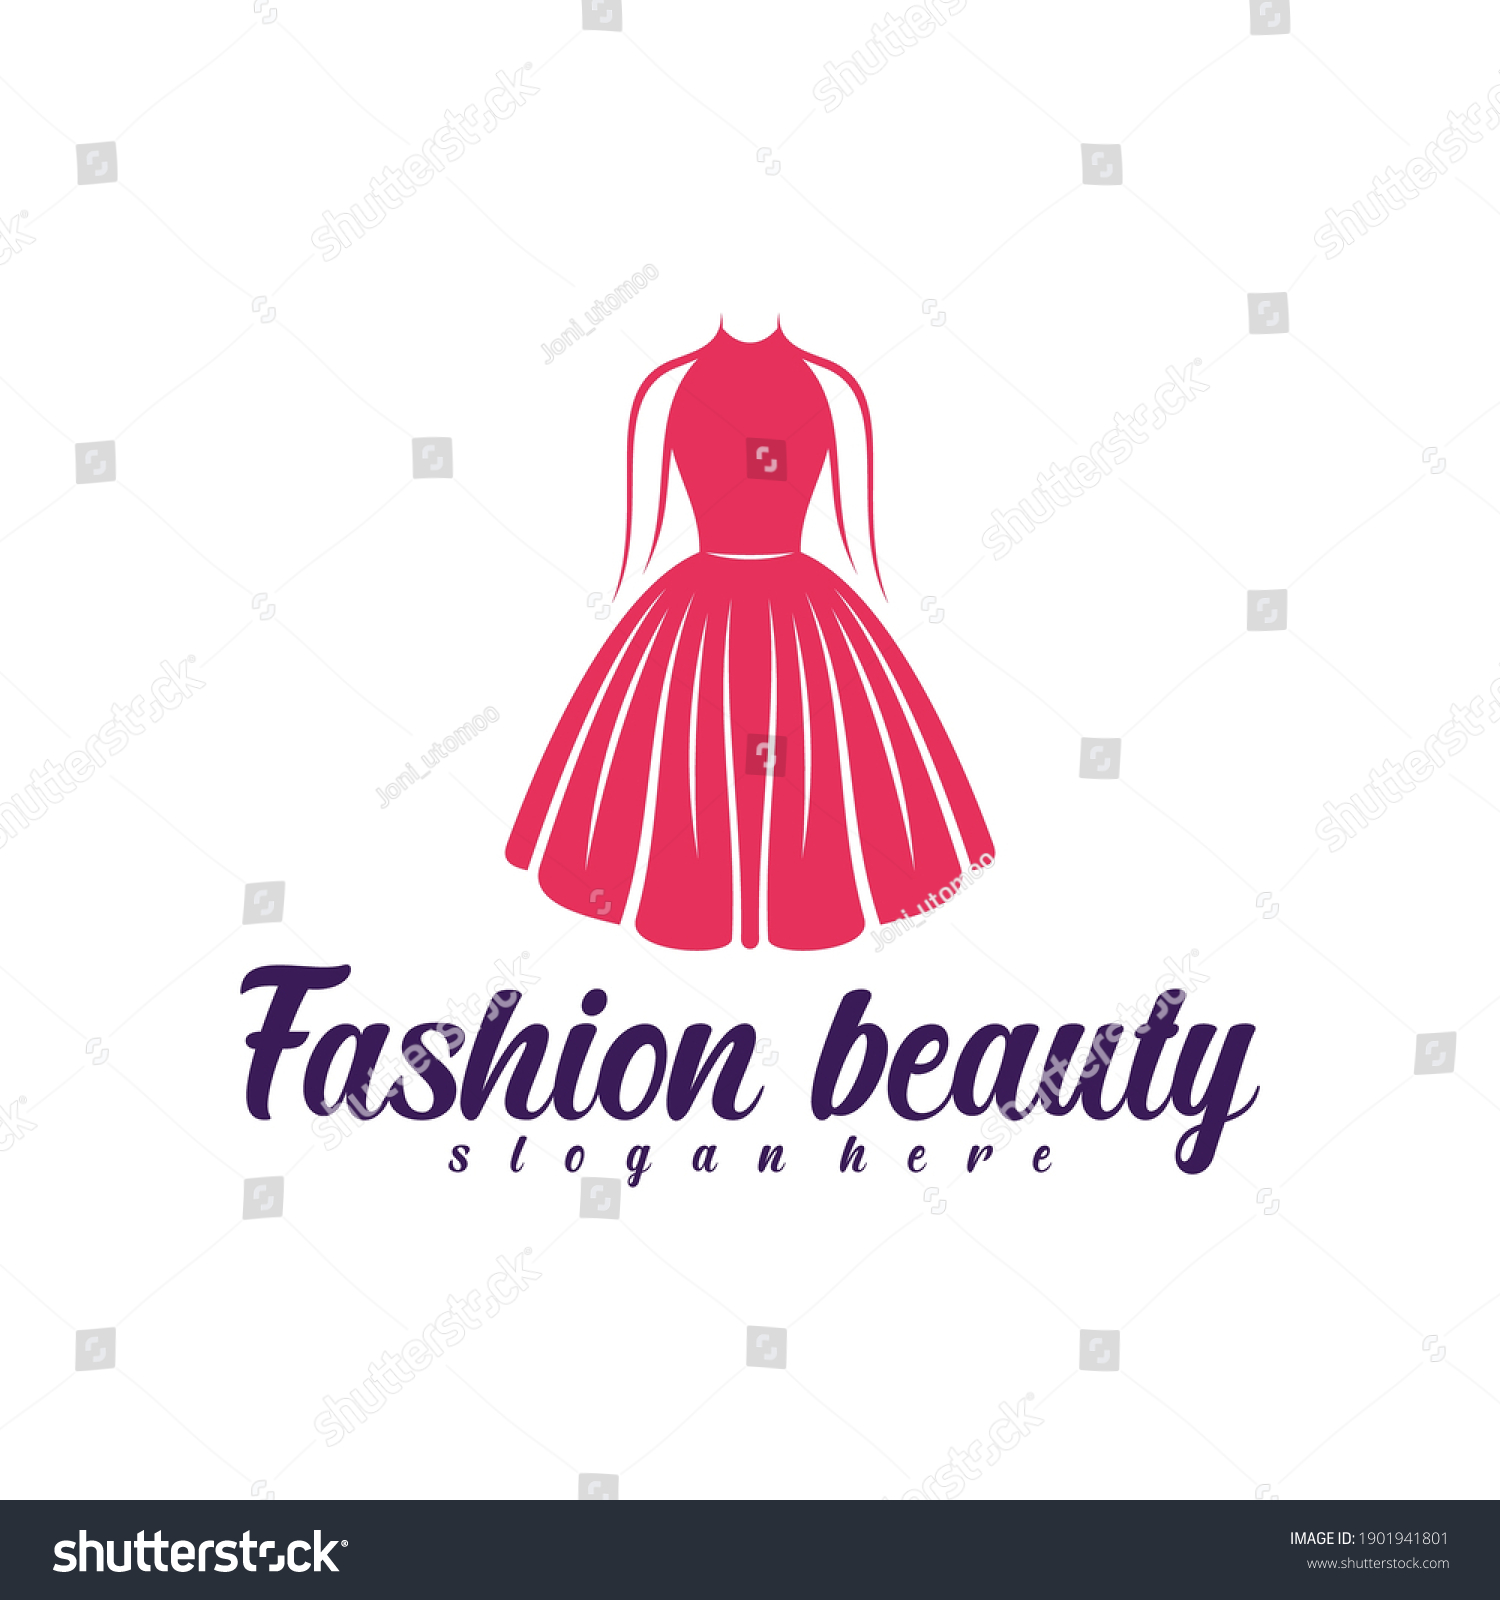 196,674 Fashion boutique logo Images, Stock Photos & Vectors | Shutterstock